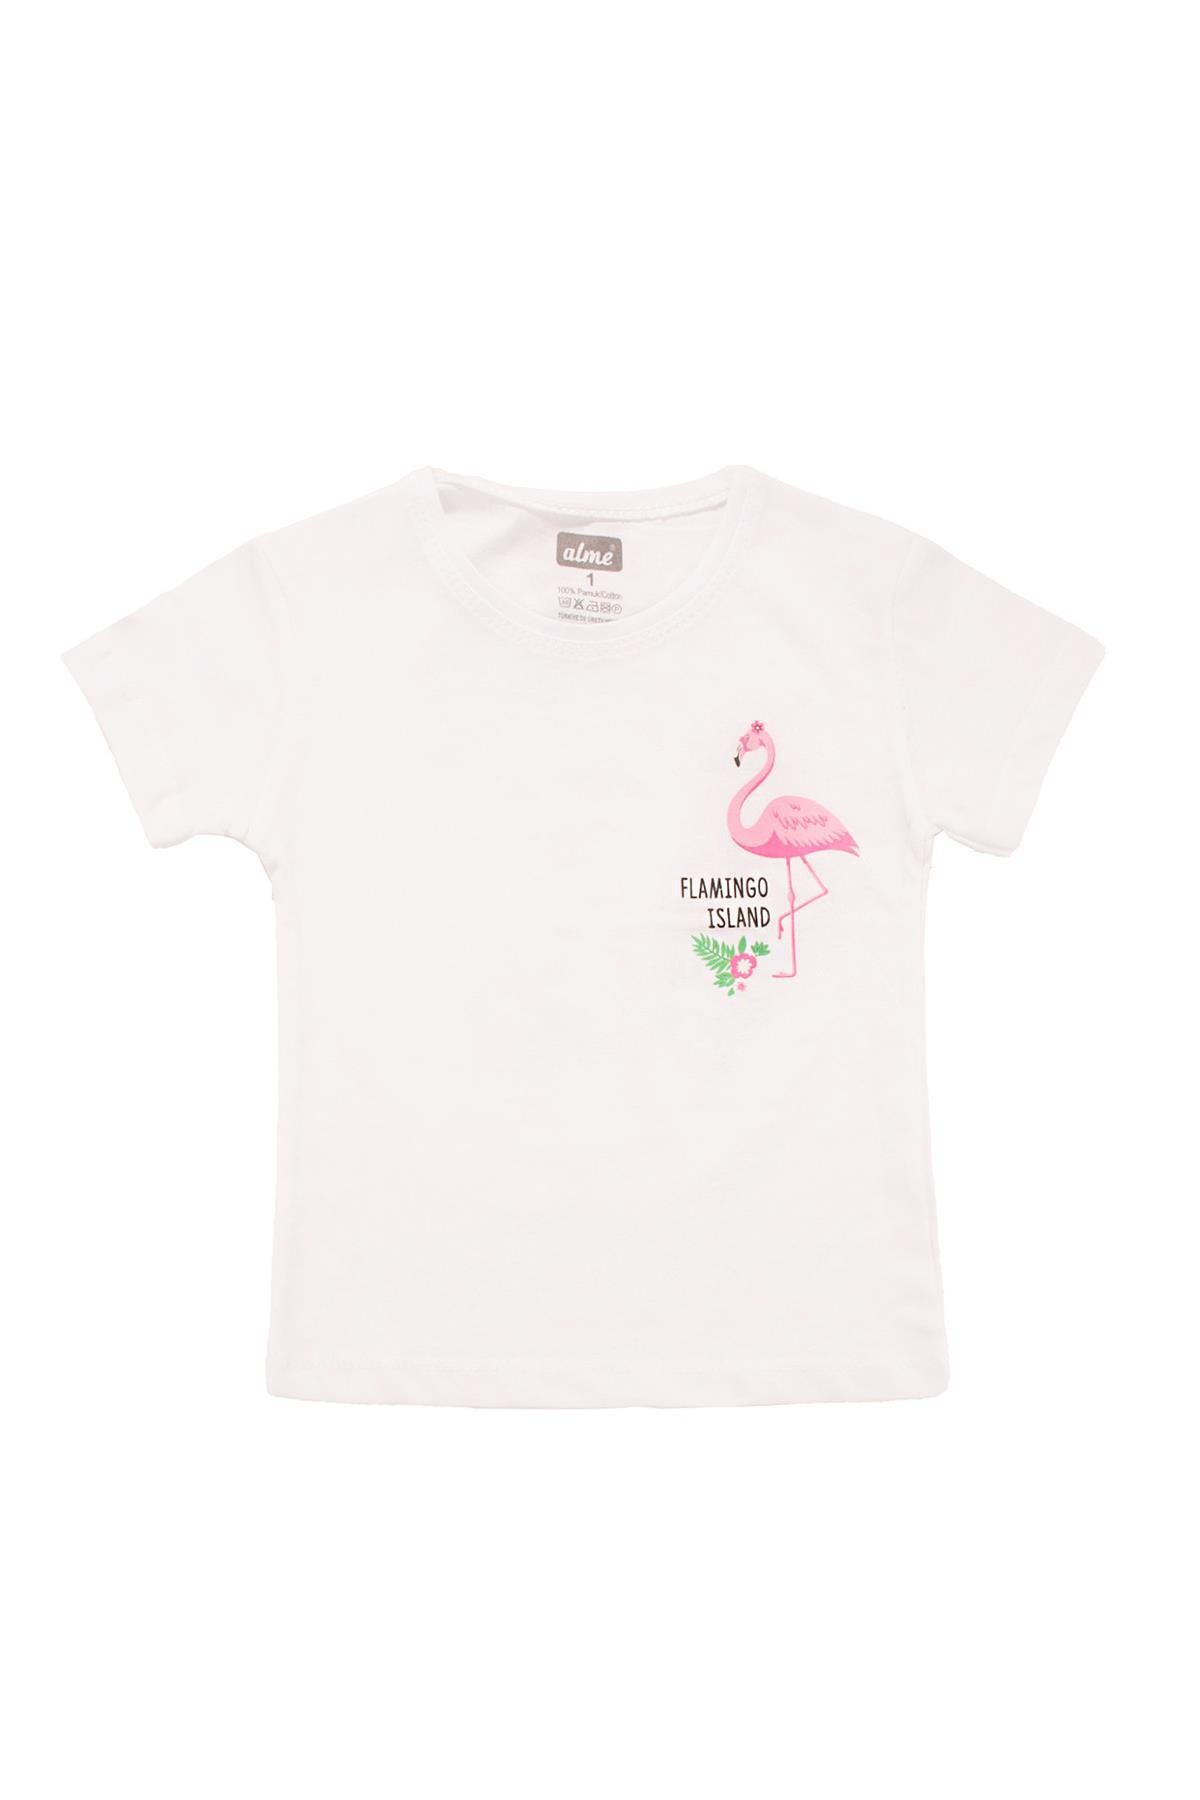 Alme Flamingo Baskılı Kız Bebek Tshirt Beyaz